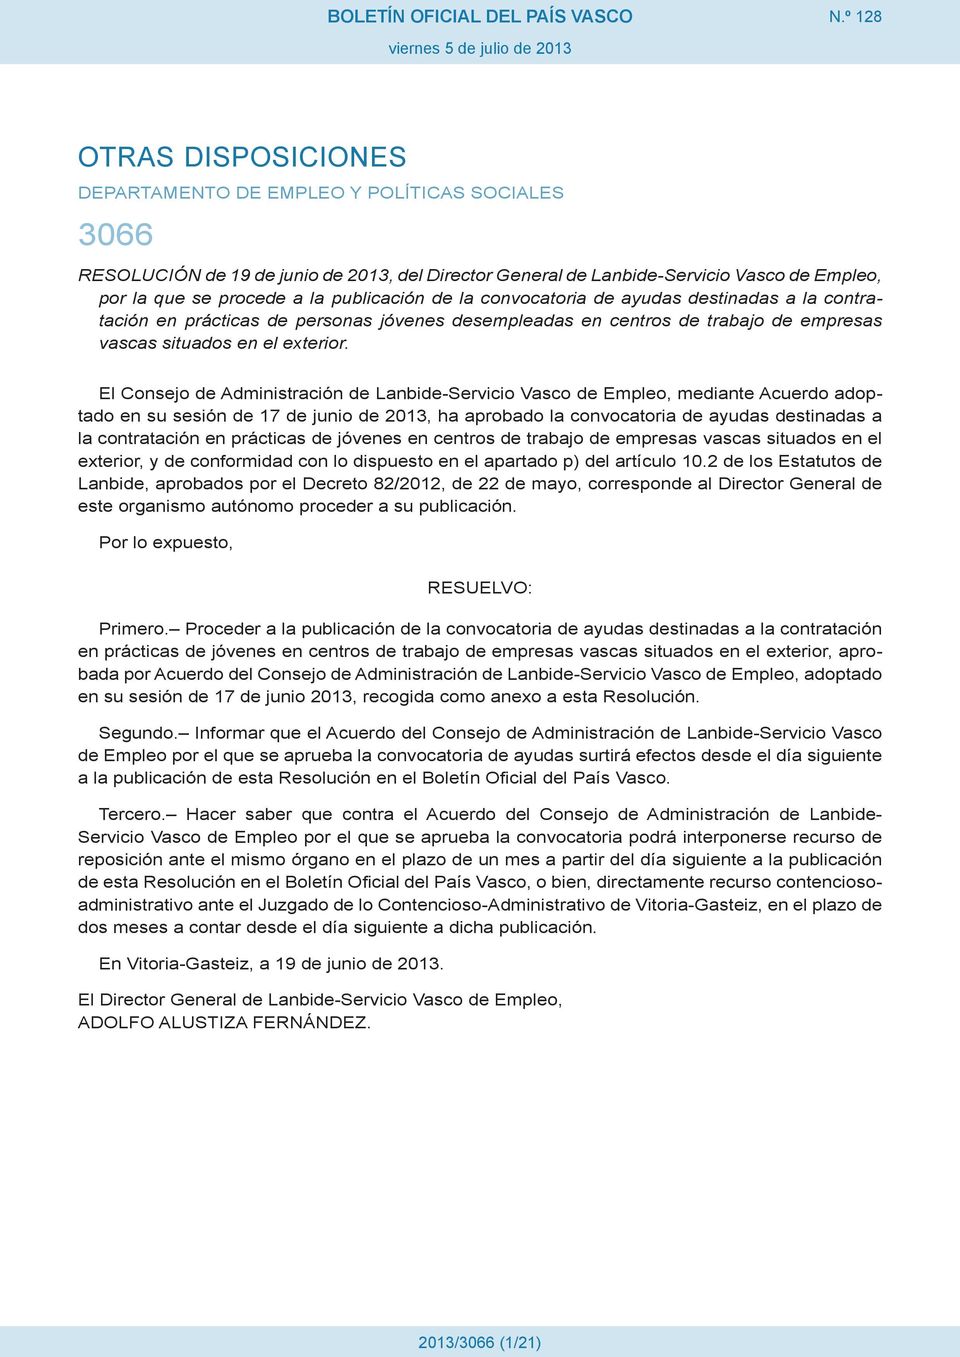 El Consejo de Administración de Lanbide-Servicio Vasco de Empleo, mediante Acuerdo adoptado en su sesión de 17 de junio de 2013, ha aprobado la convocatoria de ayudas destinadas a la contratación en